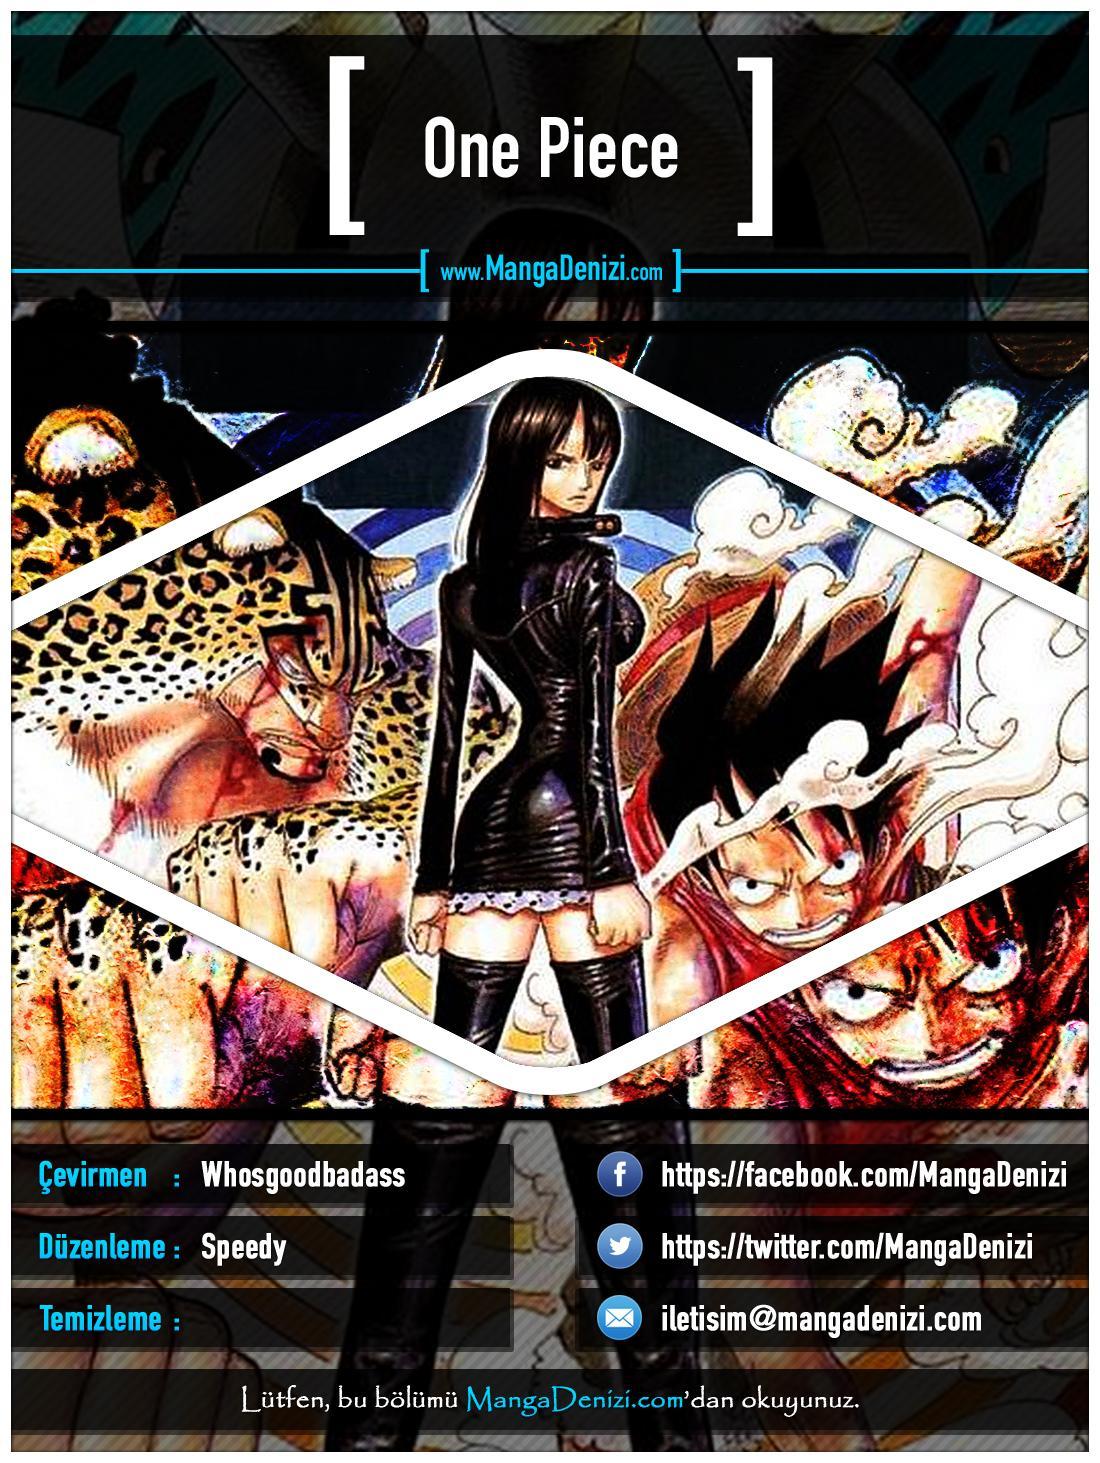 One Piece [Renkli] mangasının 0369 bölümünün 1. sayfasını okuyorsunuz.